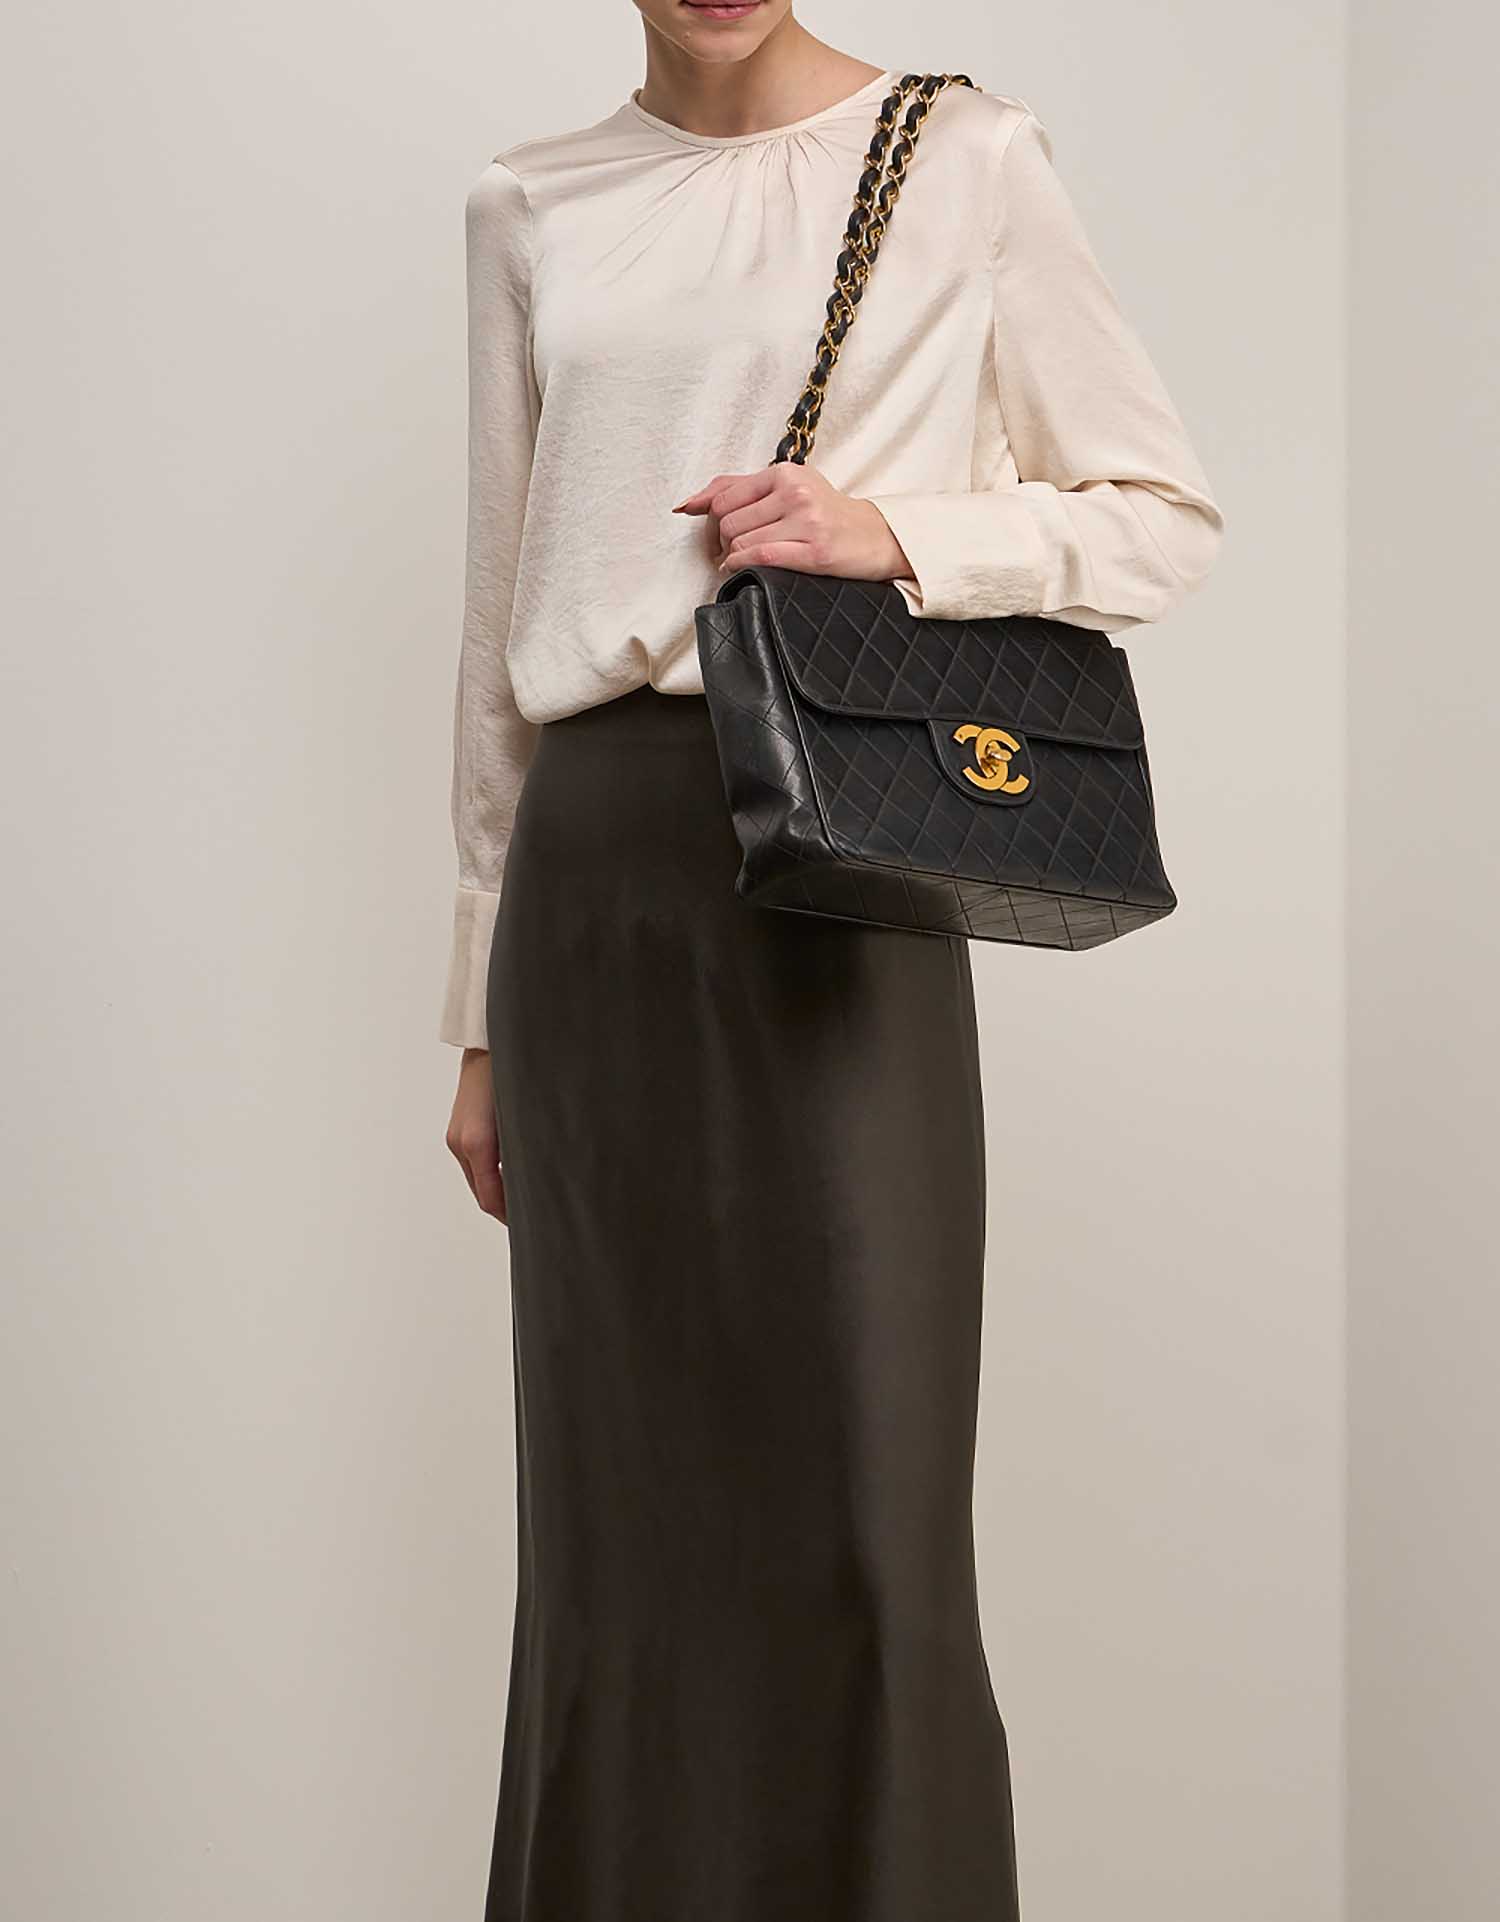 Chanel Timeless Jumbo Schwarz auf Model | Verkaufen Sie Ihre Designer-Tasche auf Saclab.com